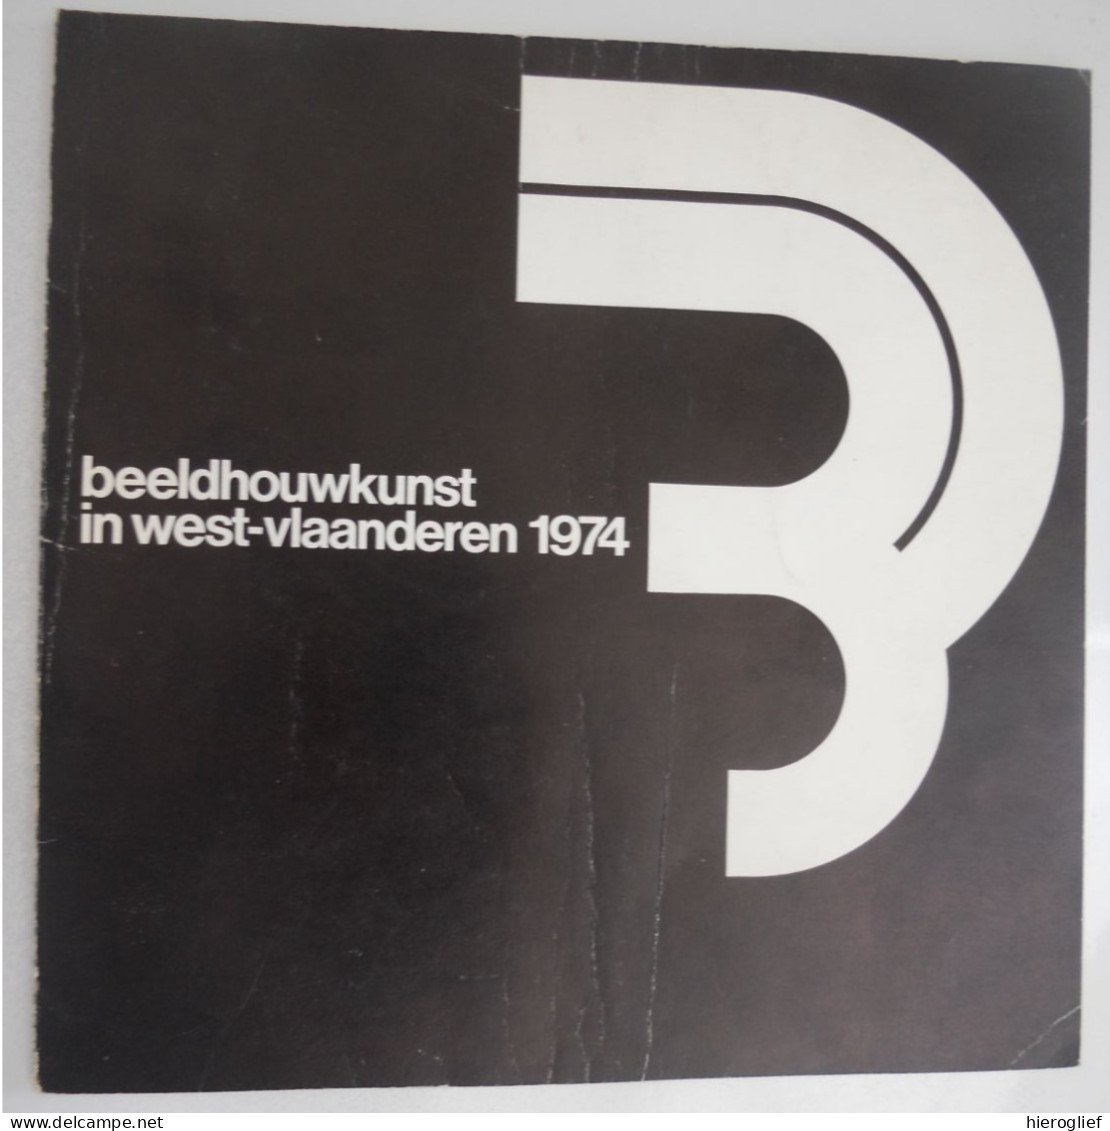 Beeldhouwkunst In West-vlaanderen 1974 - Tentoonstelling Oostkamp Brugge Taeckens Depuydt Spilliaert Vandroemme Verduyn - History